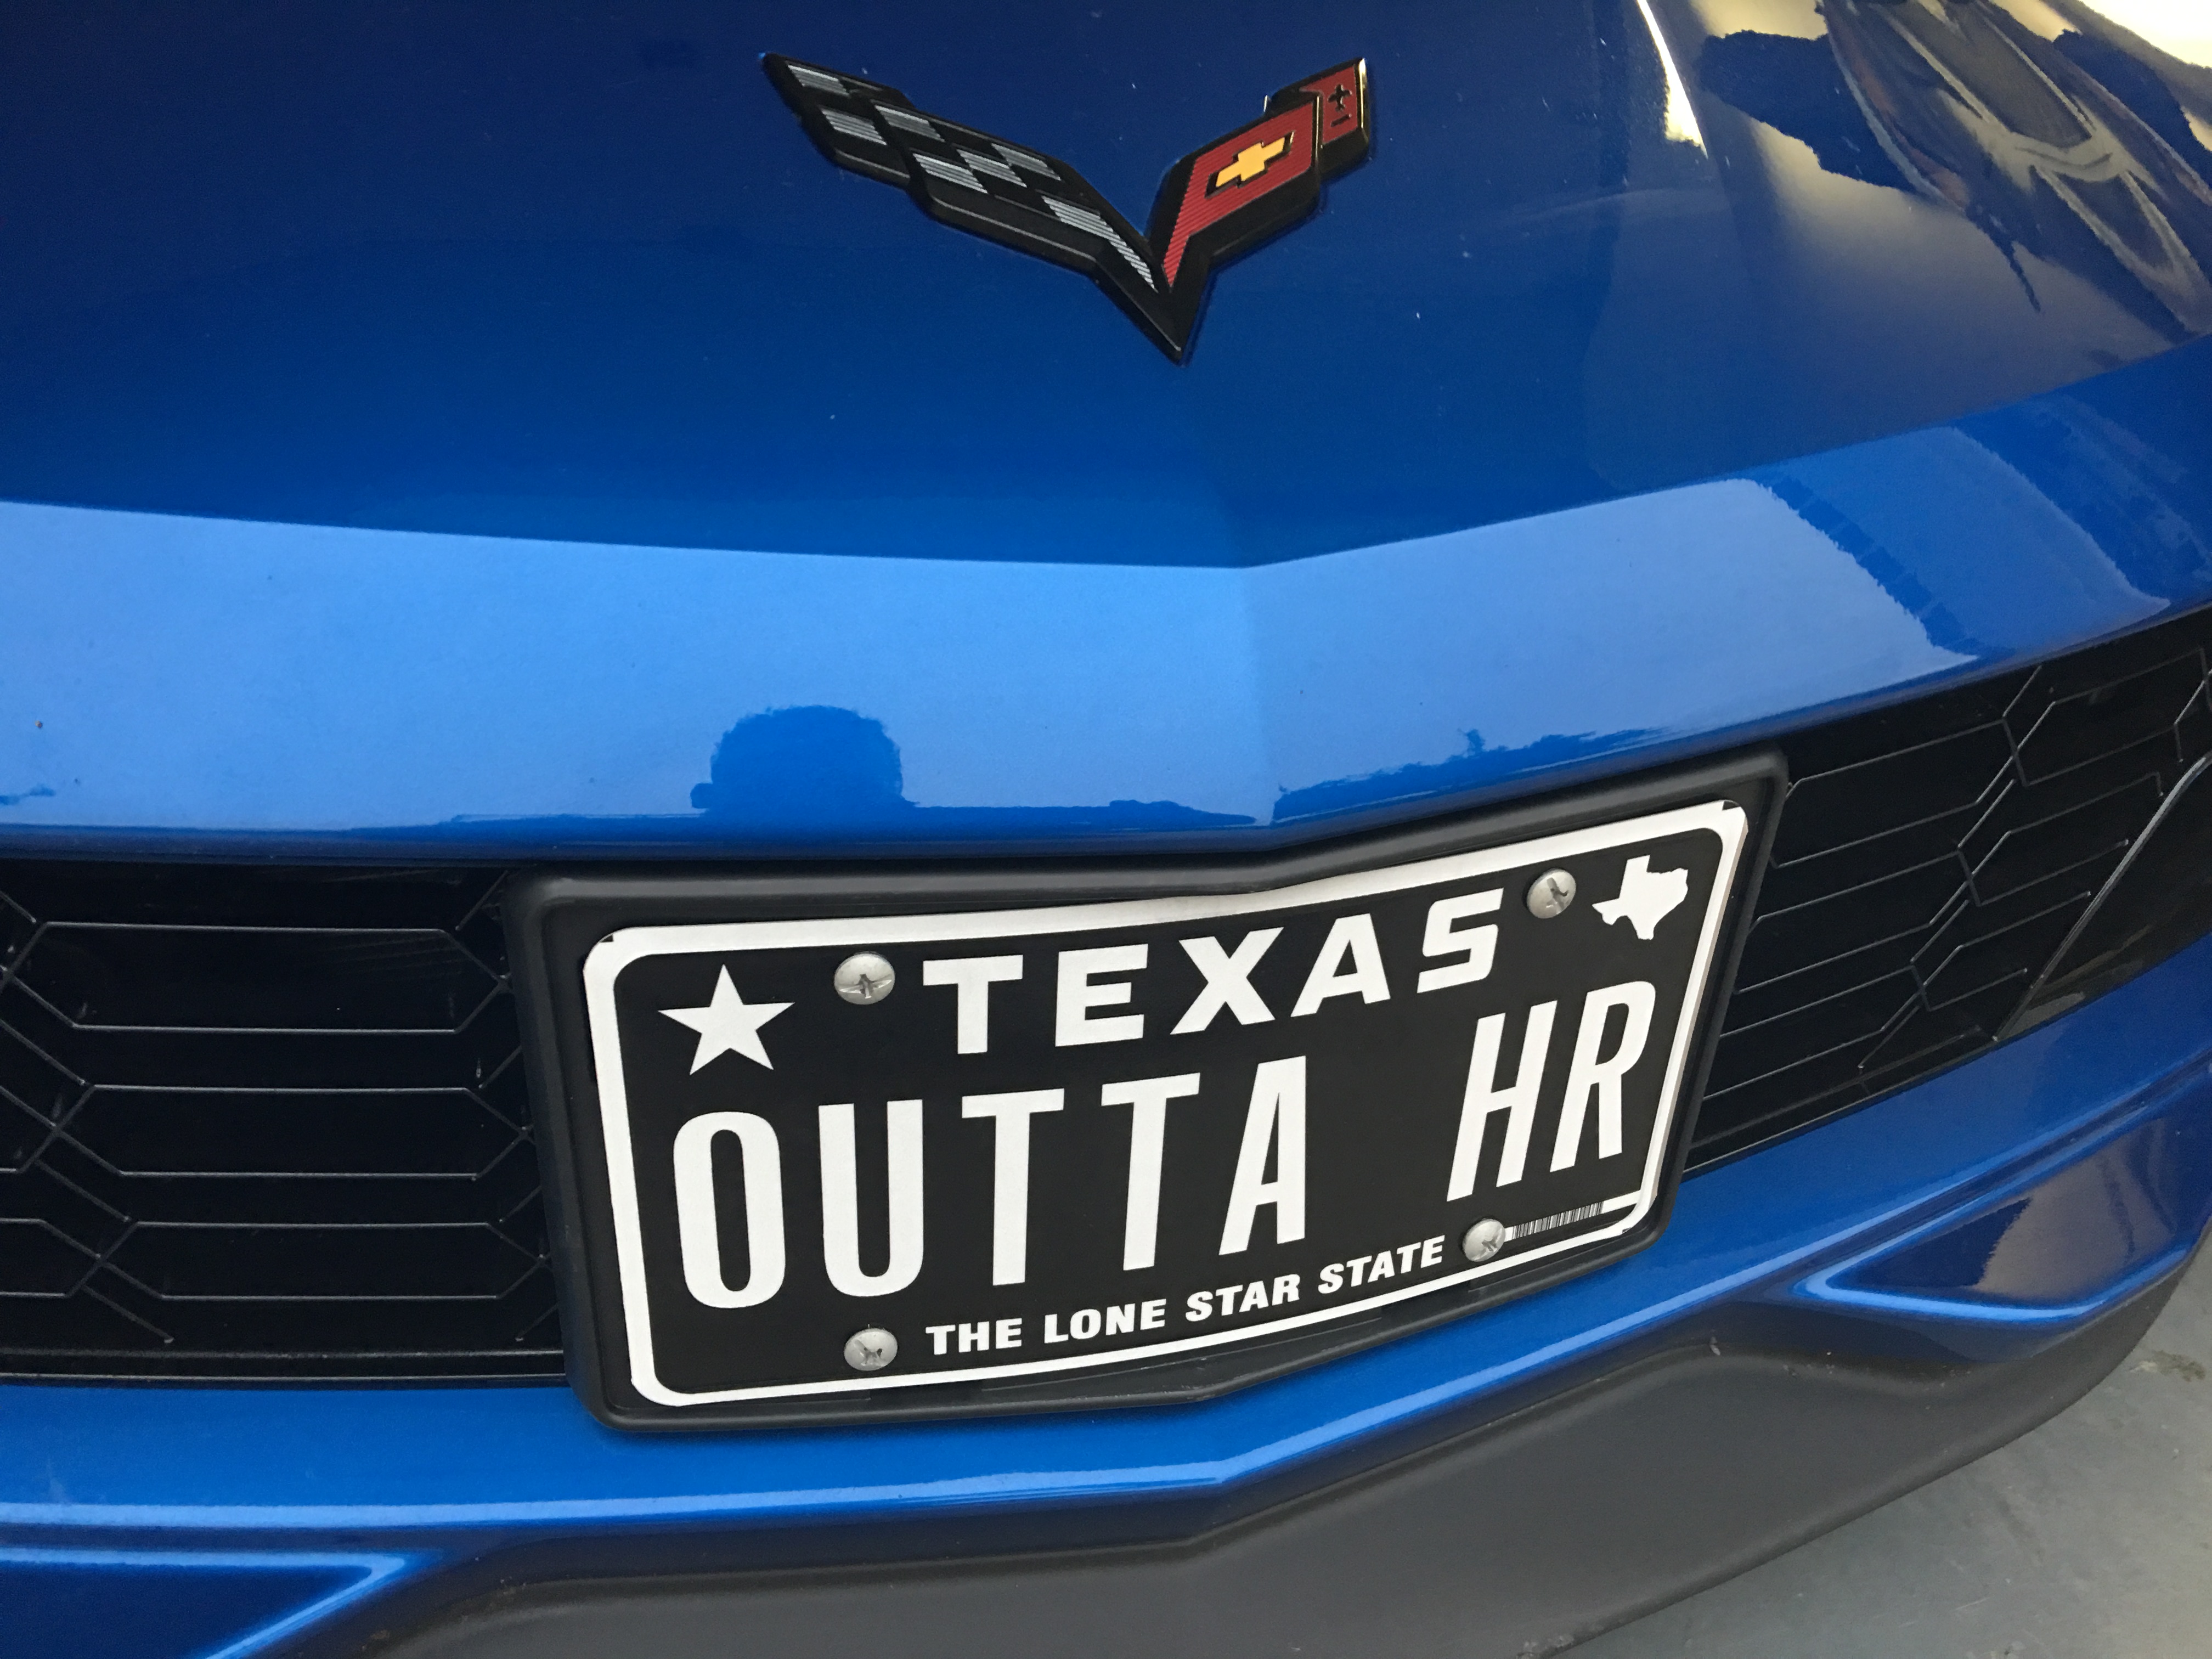 2016 corvette front license plate bracket